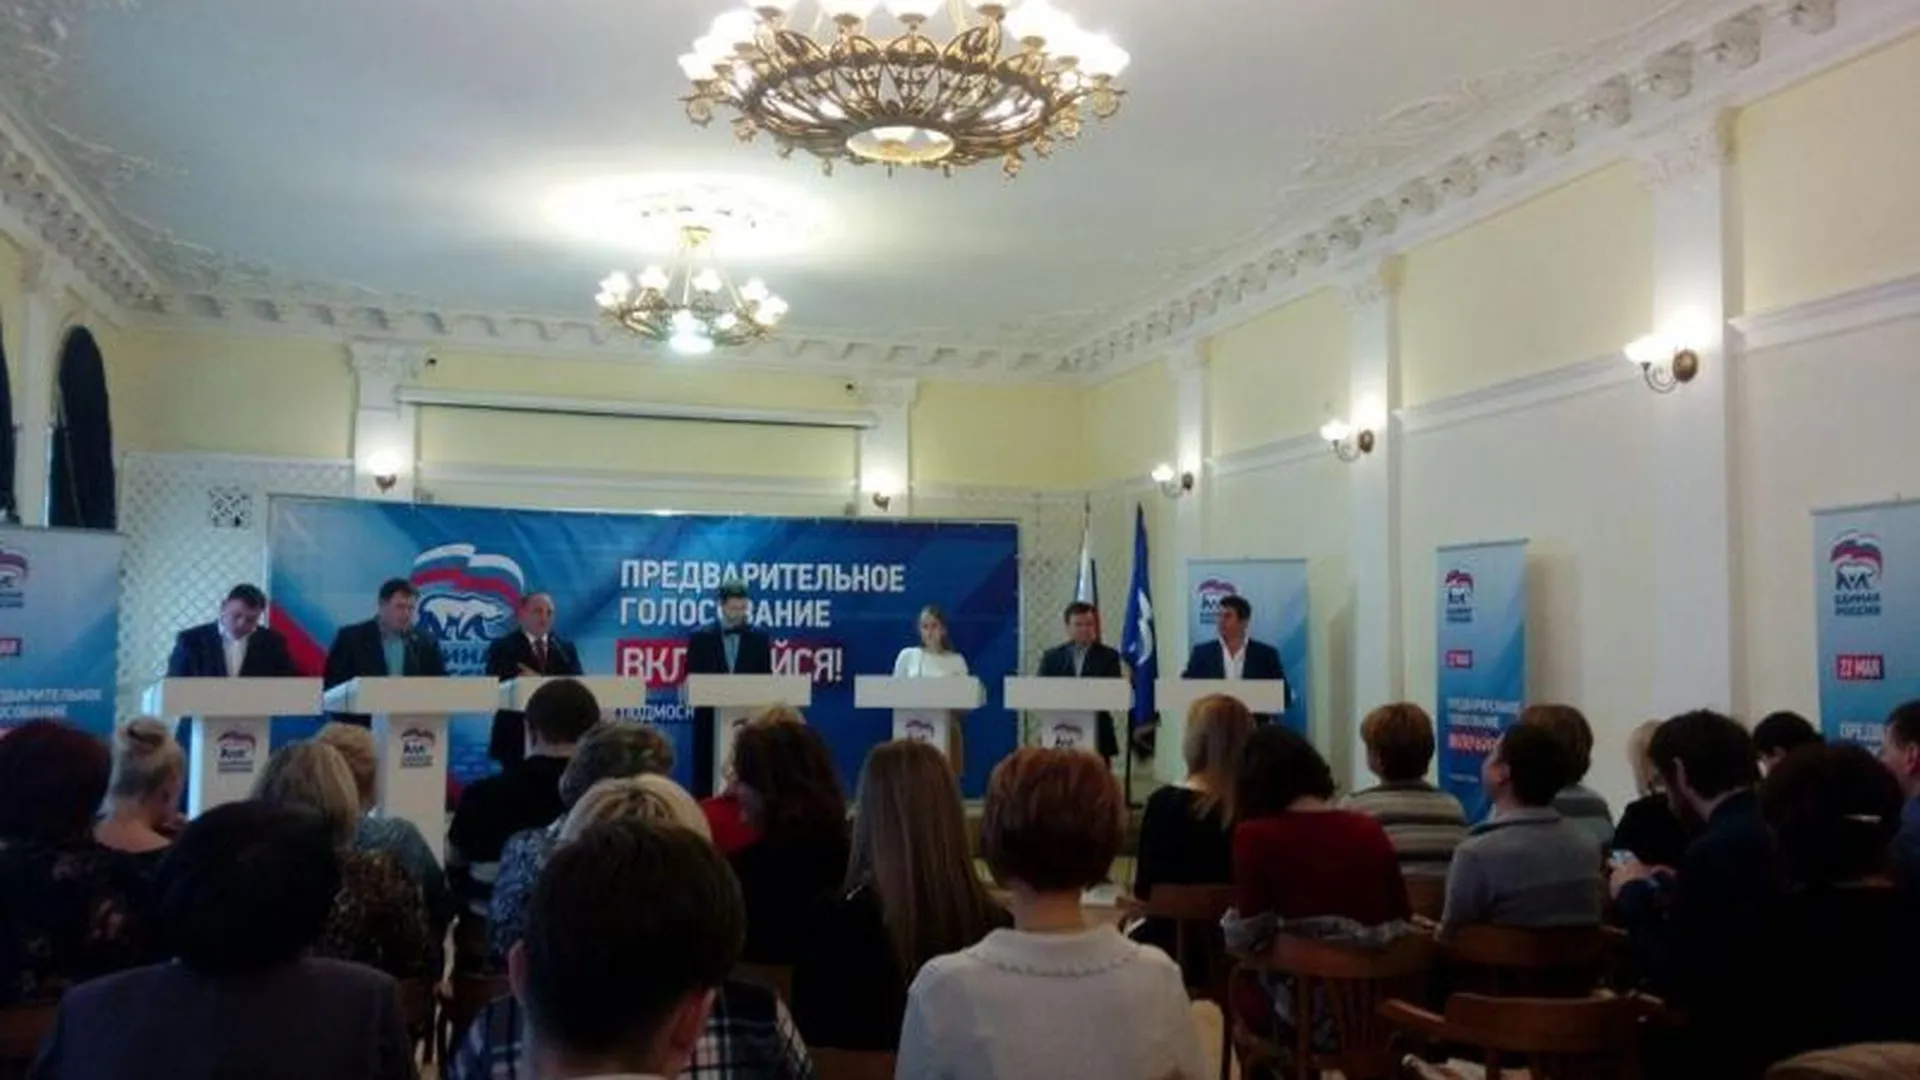 Первые дебаты участников предварительного голосования прошли в Сергиевом Посаде